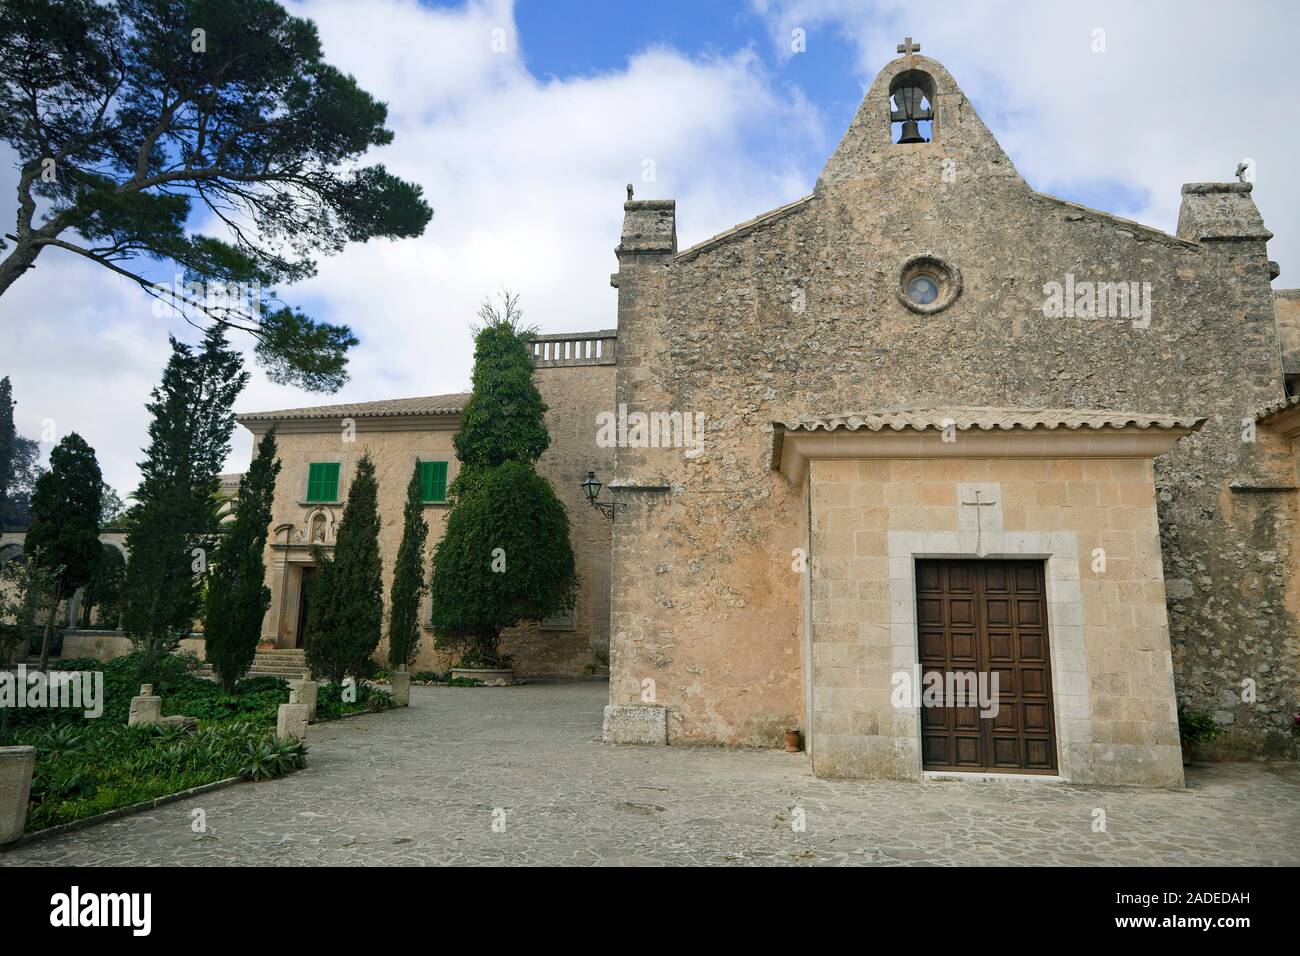 Santuari de Nostra Senyora de cura, monastère sur Puig de Randa, entre Llucmajor und Llucmajor, Majorque, îles Baléares, Espagne Banque D'Images